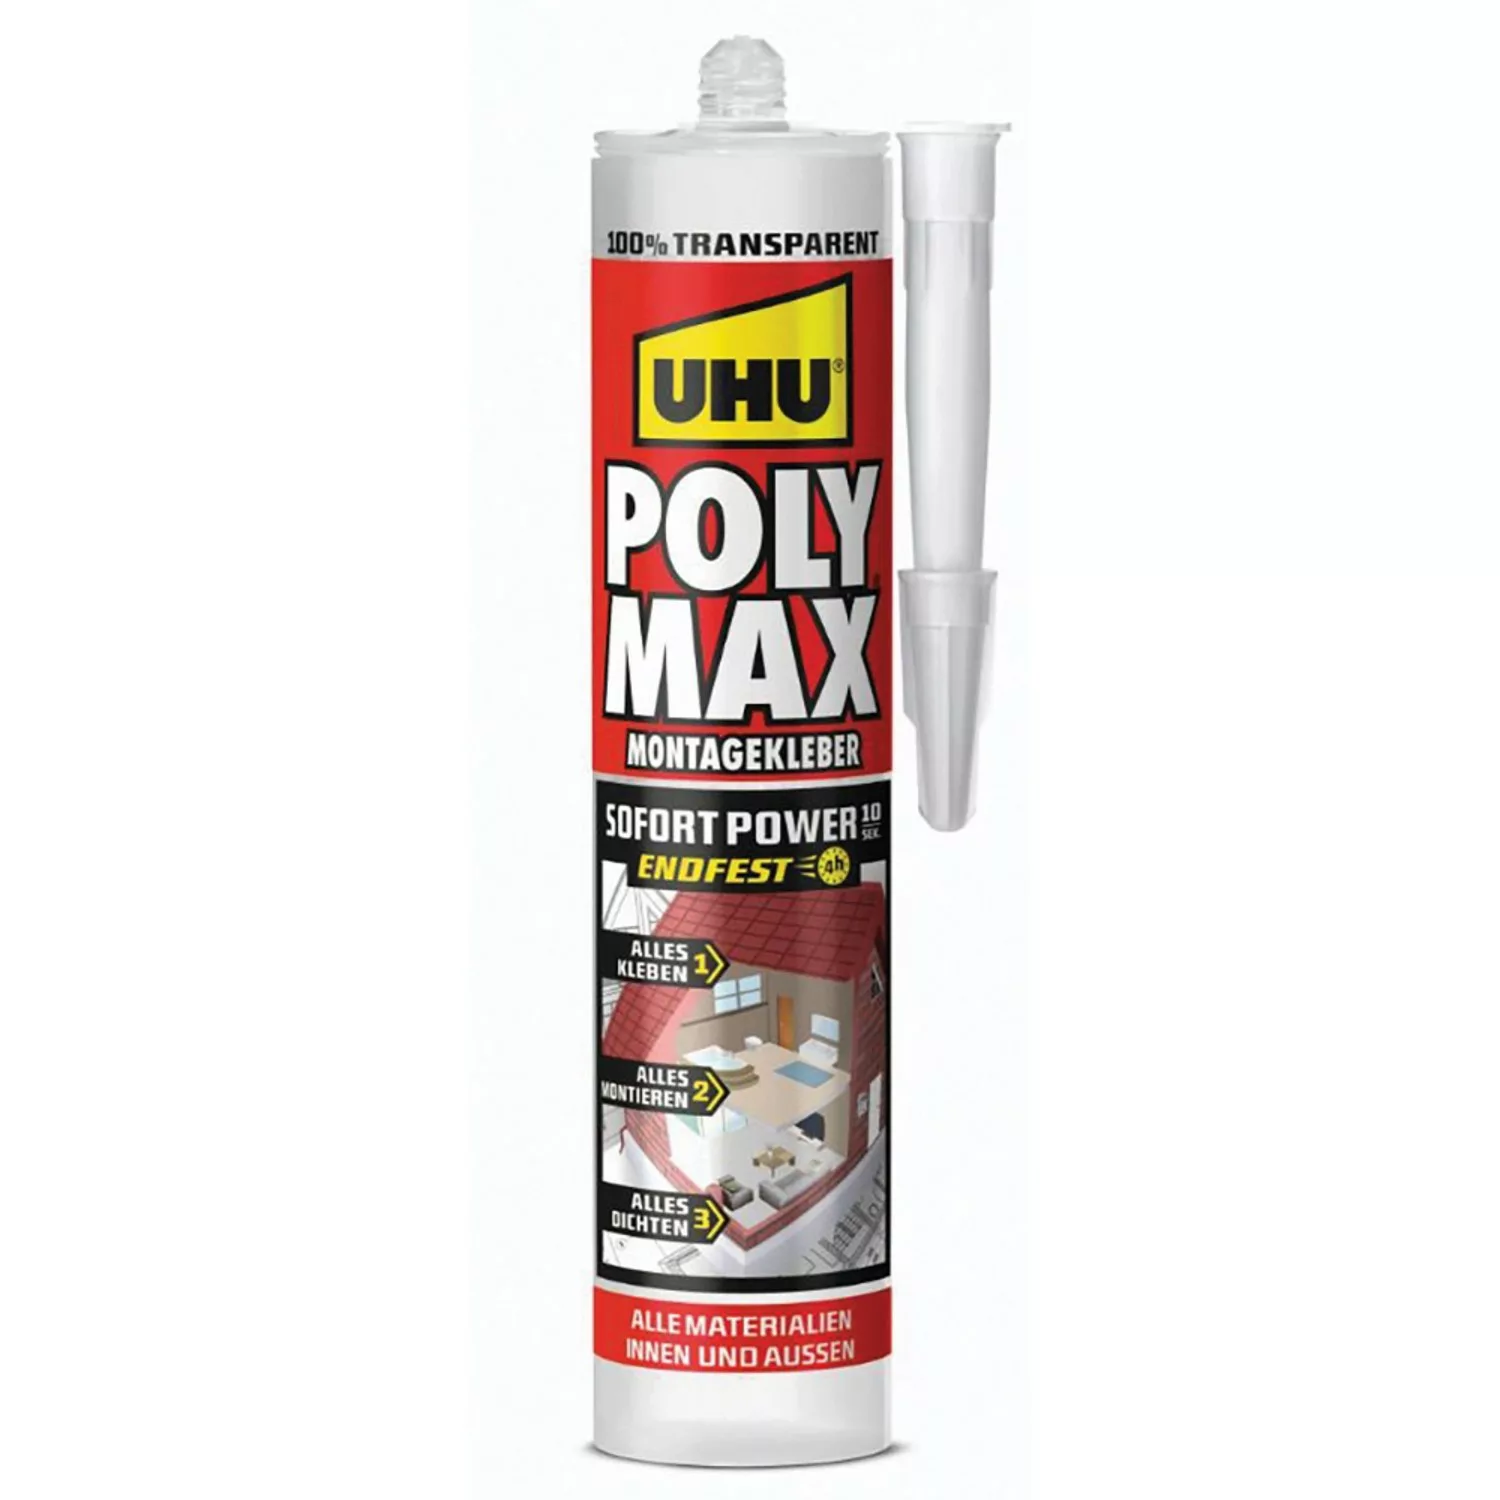 UHU Poly Max Montagekleber Sofort Power Transparent 300 g günstig online kaufen